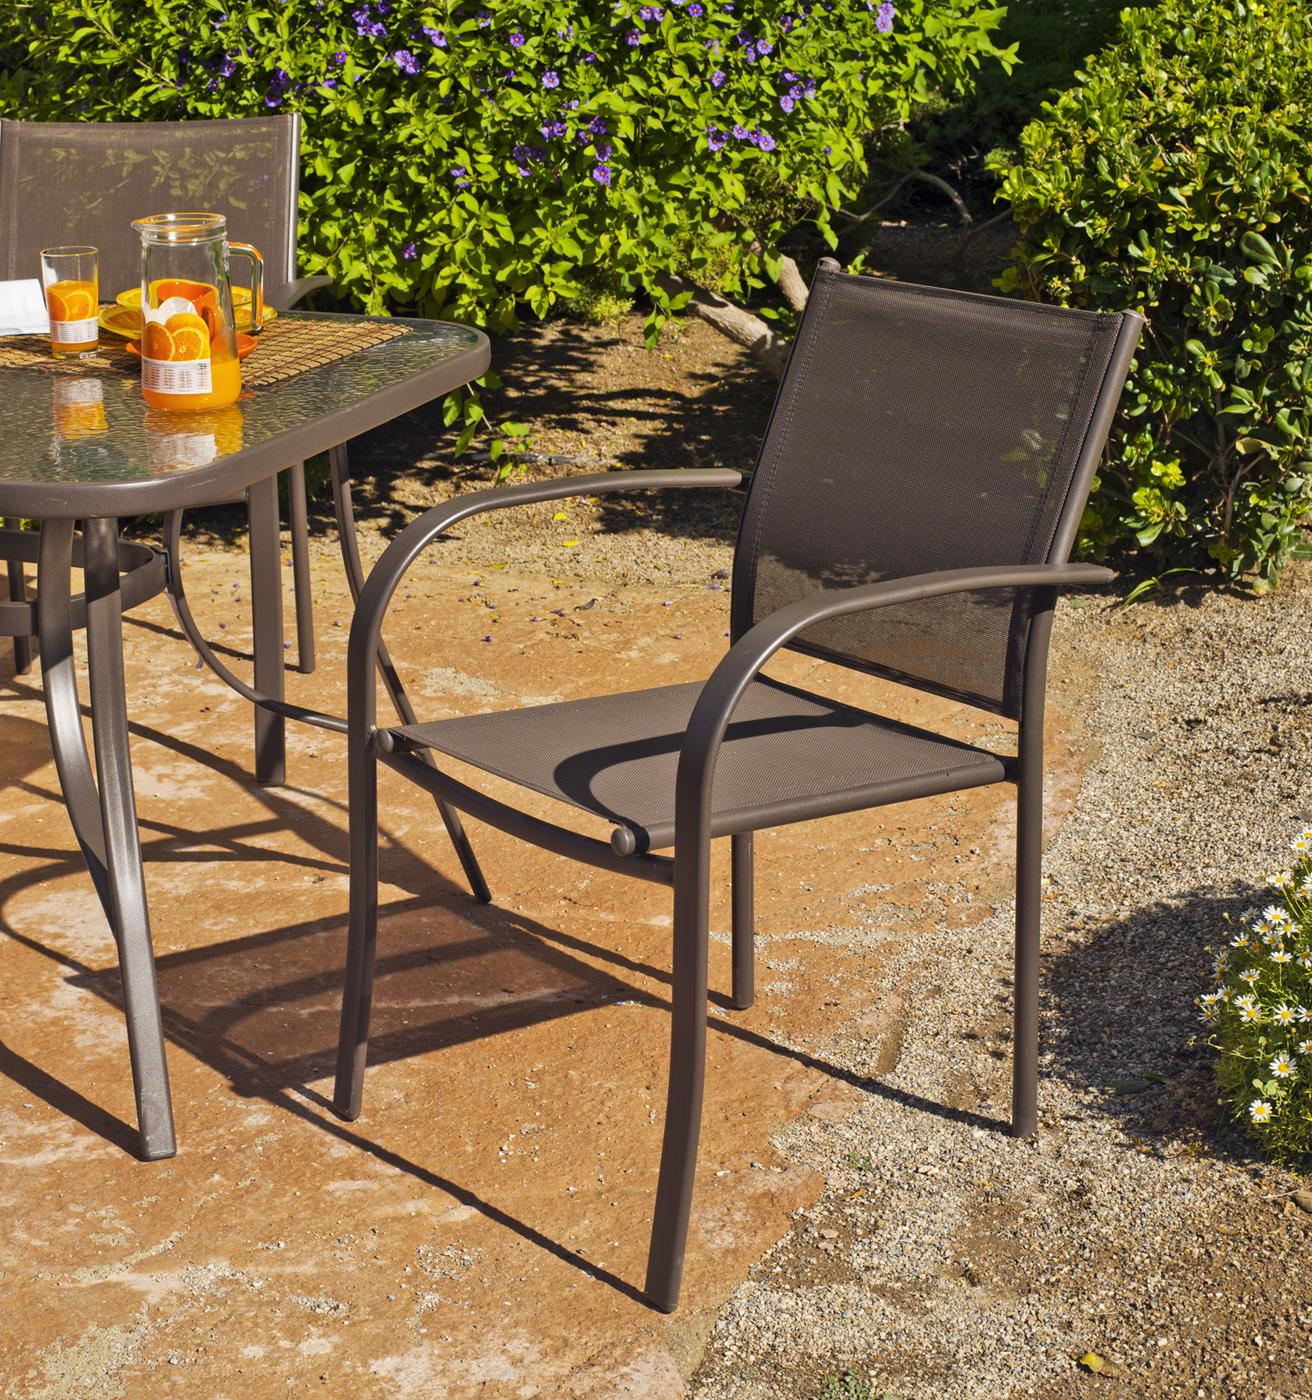 Set Acero Macao-Barcelona 150-4 - Conjunto de acero color bronce: mesa de 150 cm con tapa de cristal templado + 4 sillones de acero y textilen